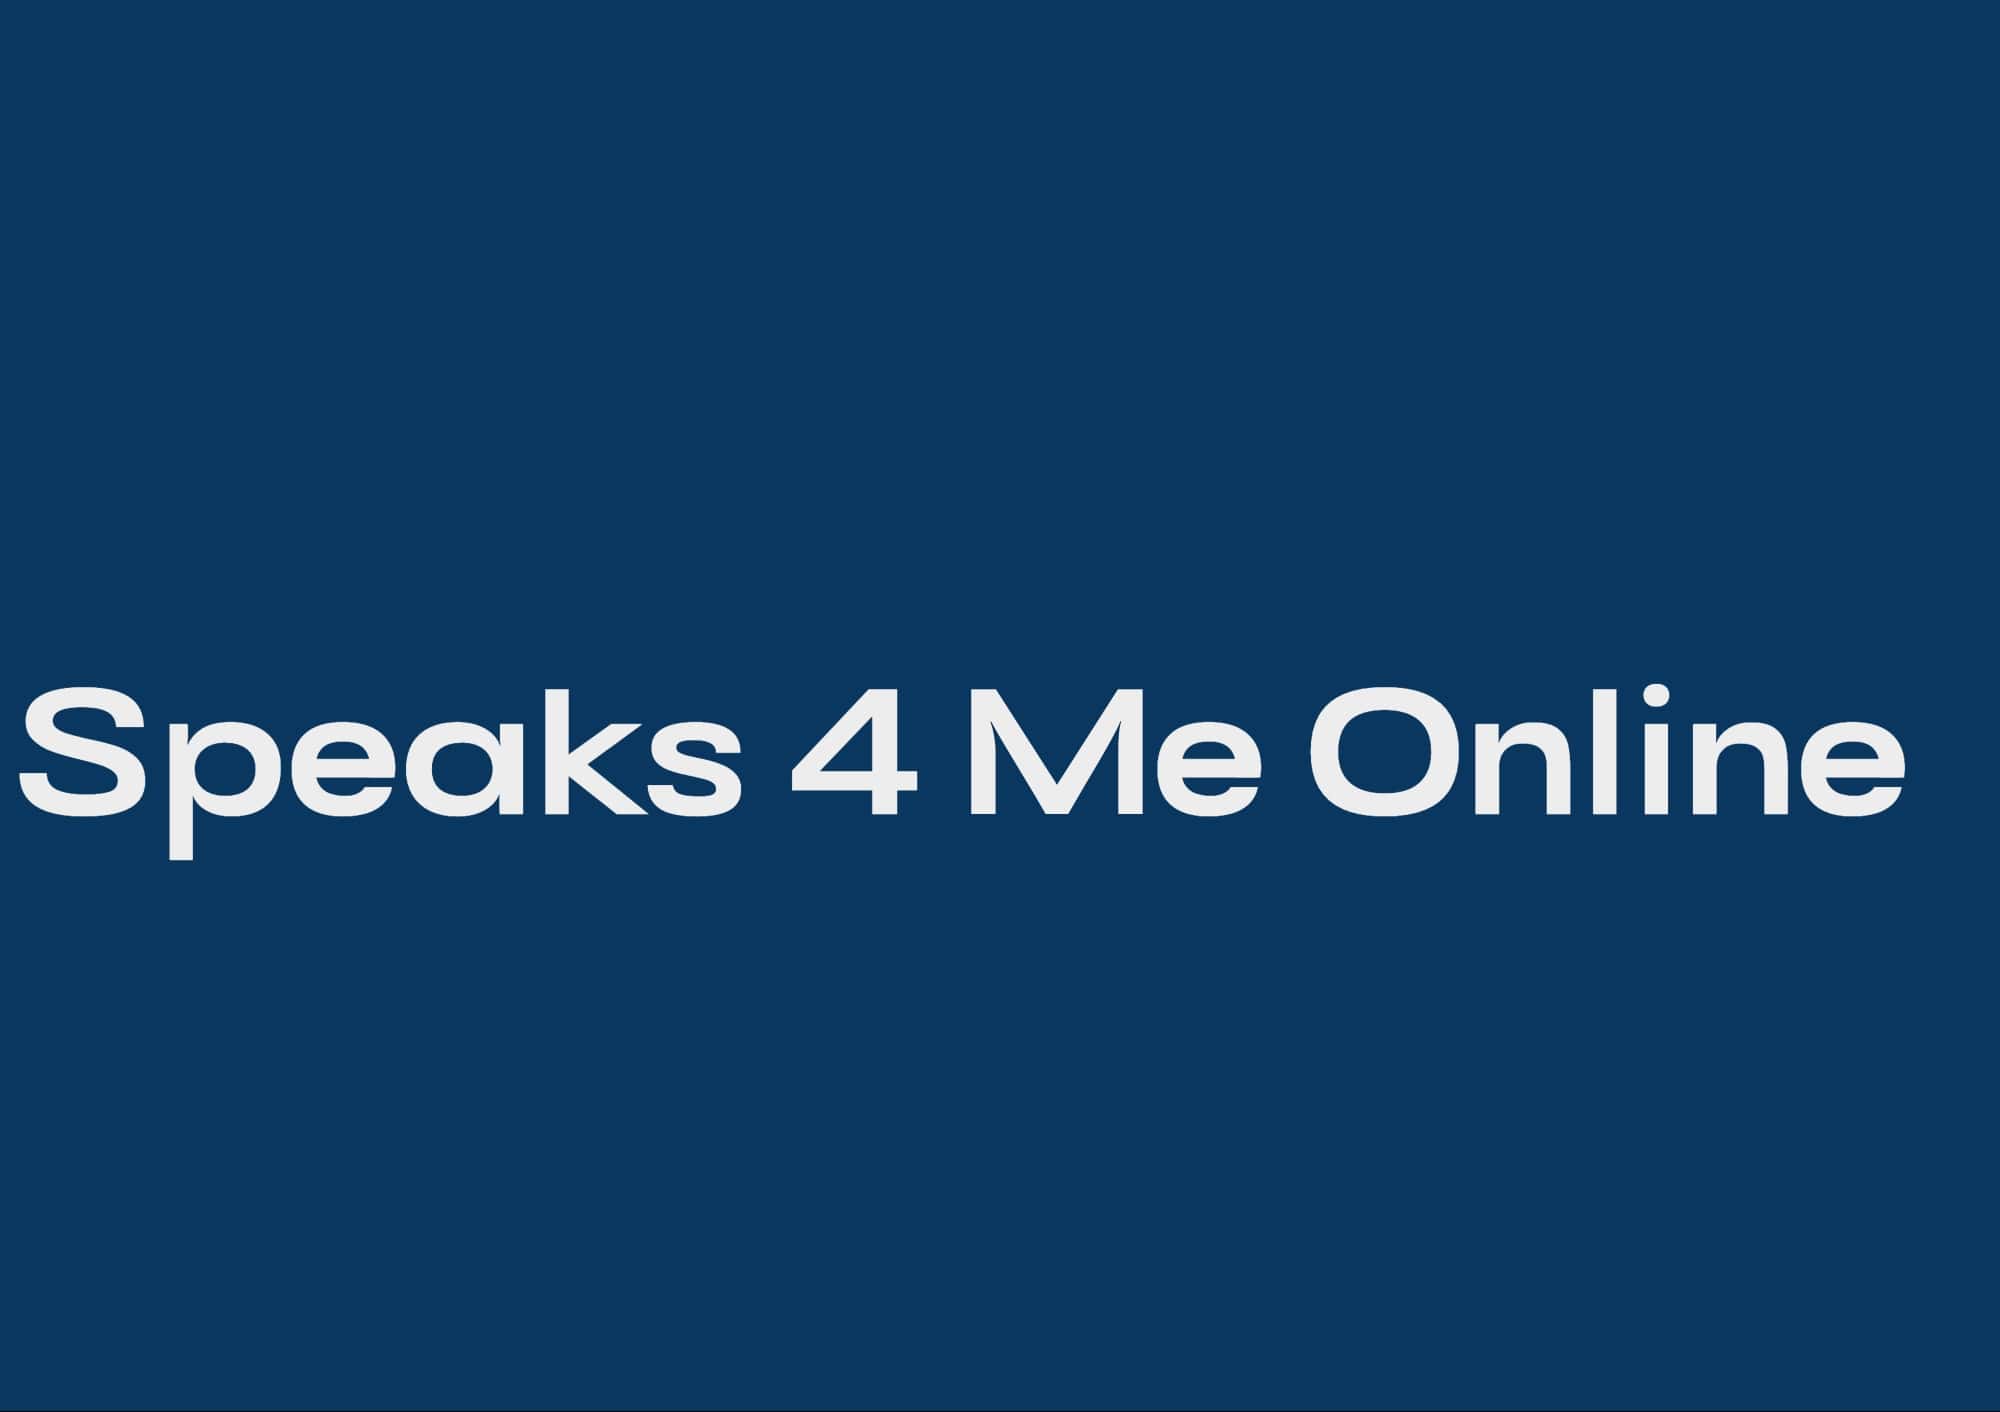 Speaks 4 Me Online